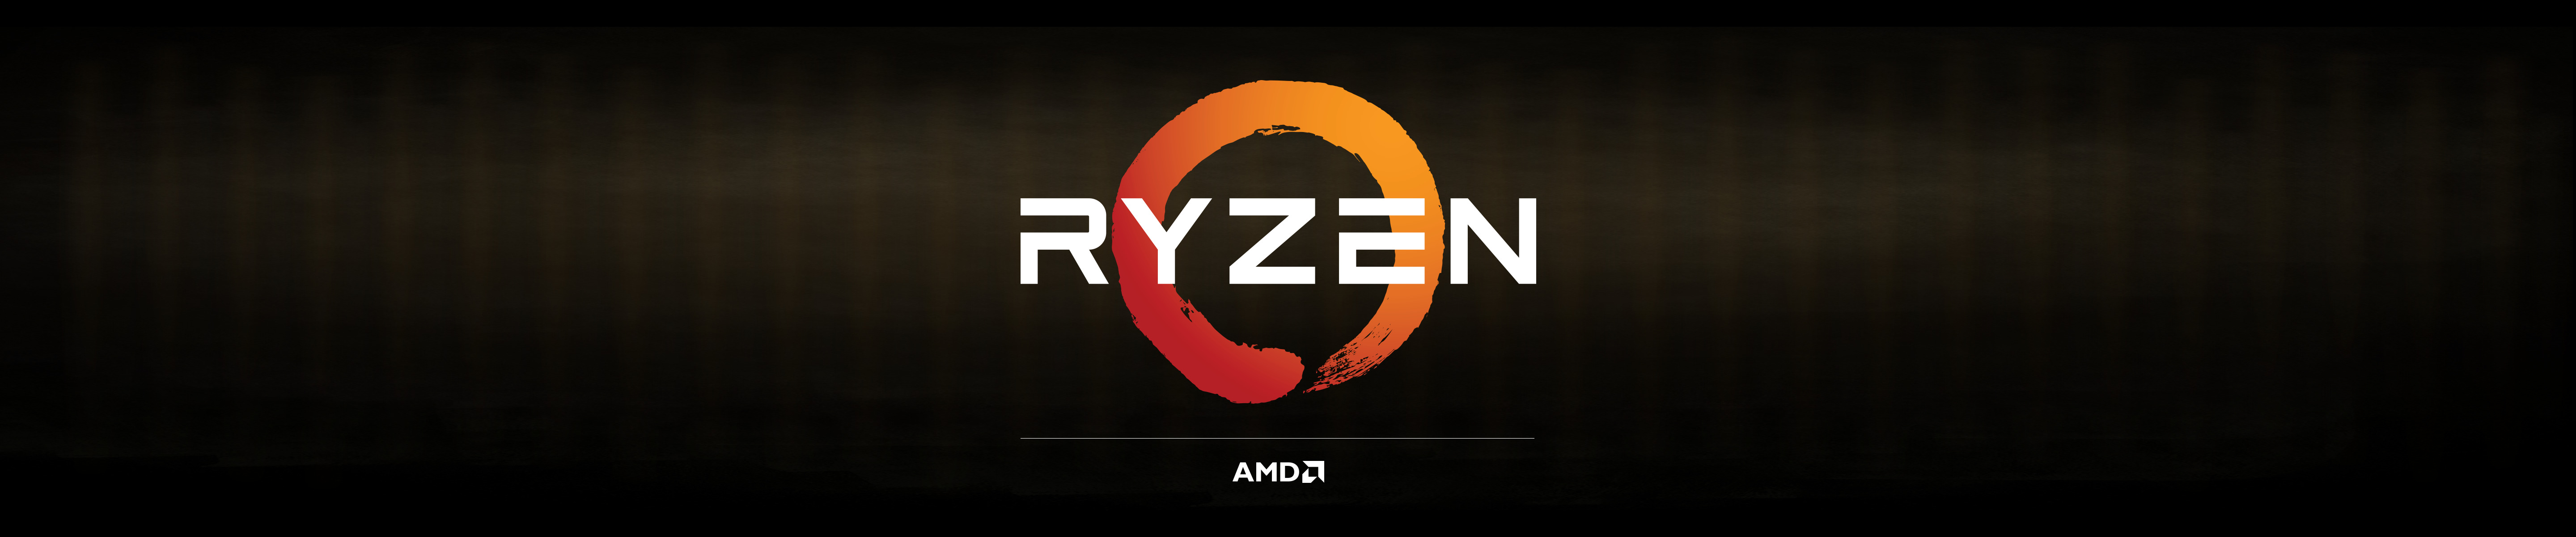 AMD, RYZEN Wallpaper